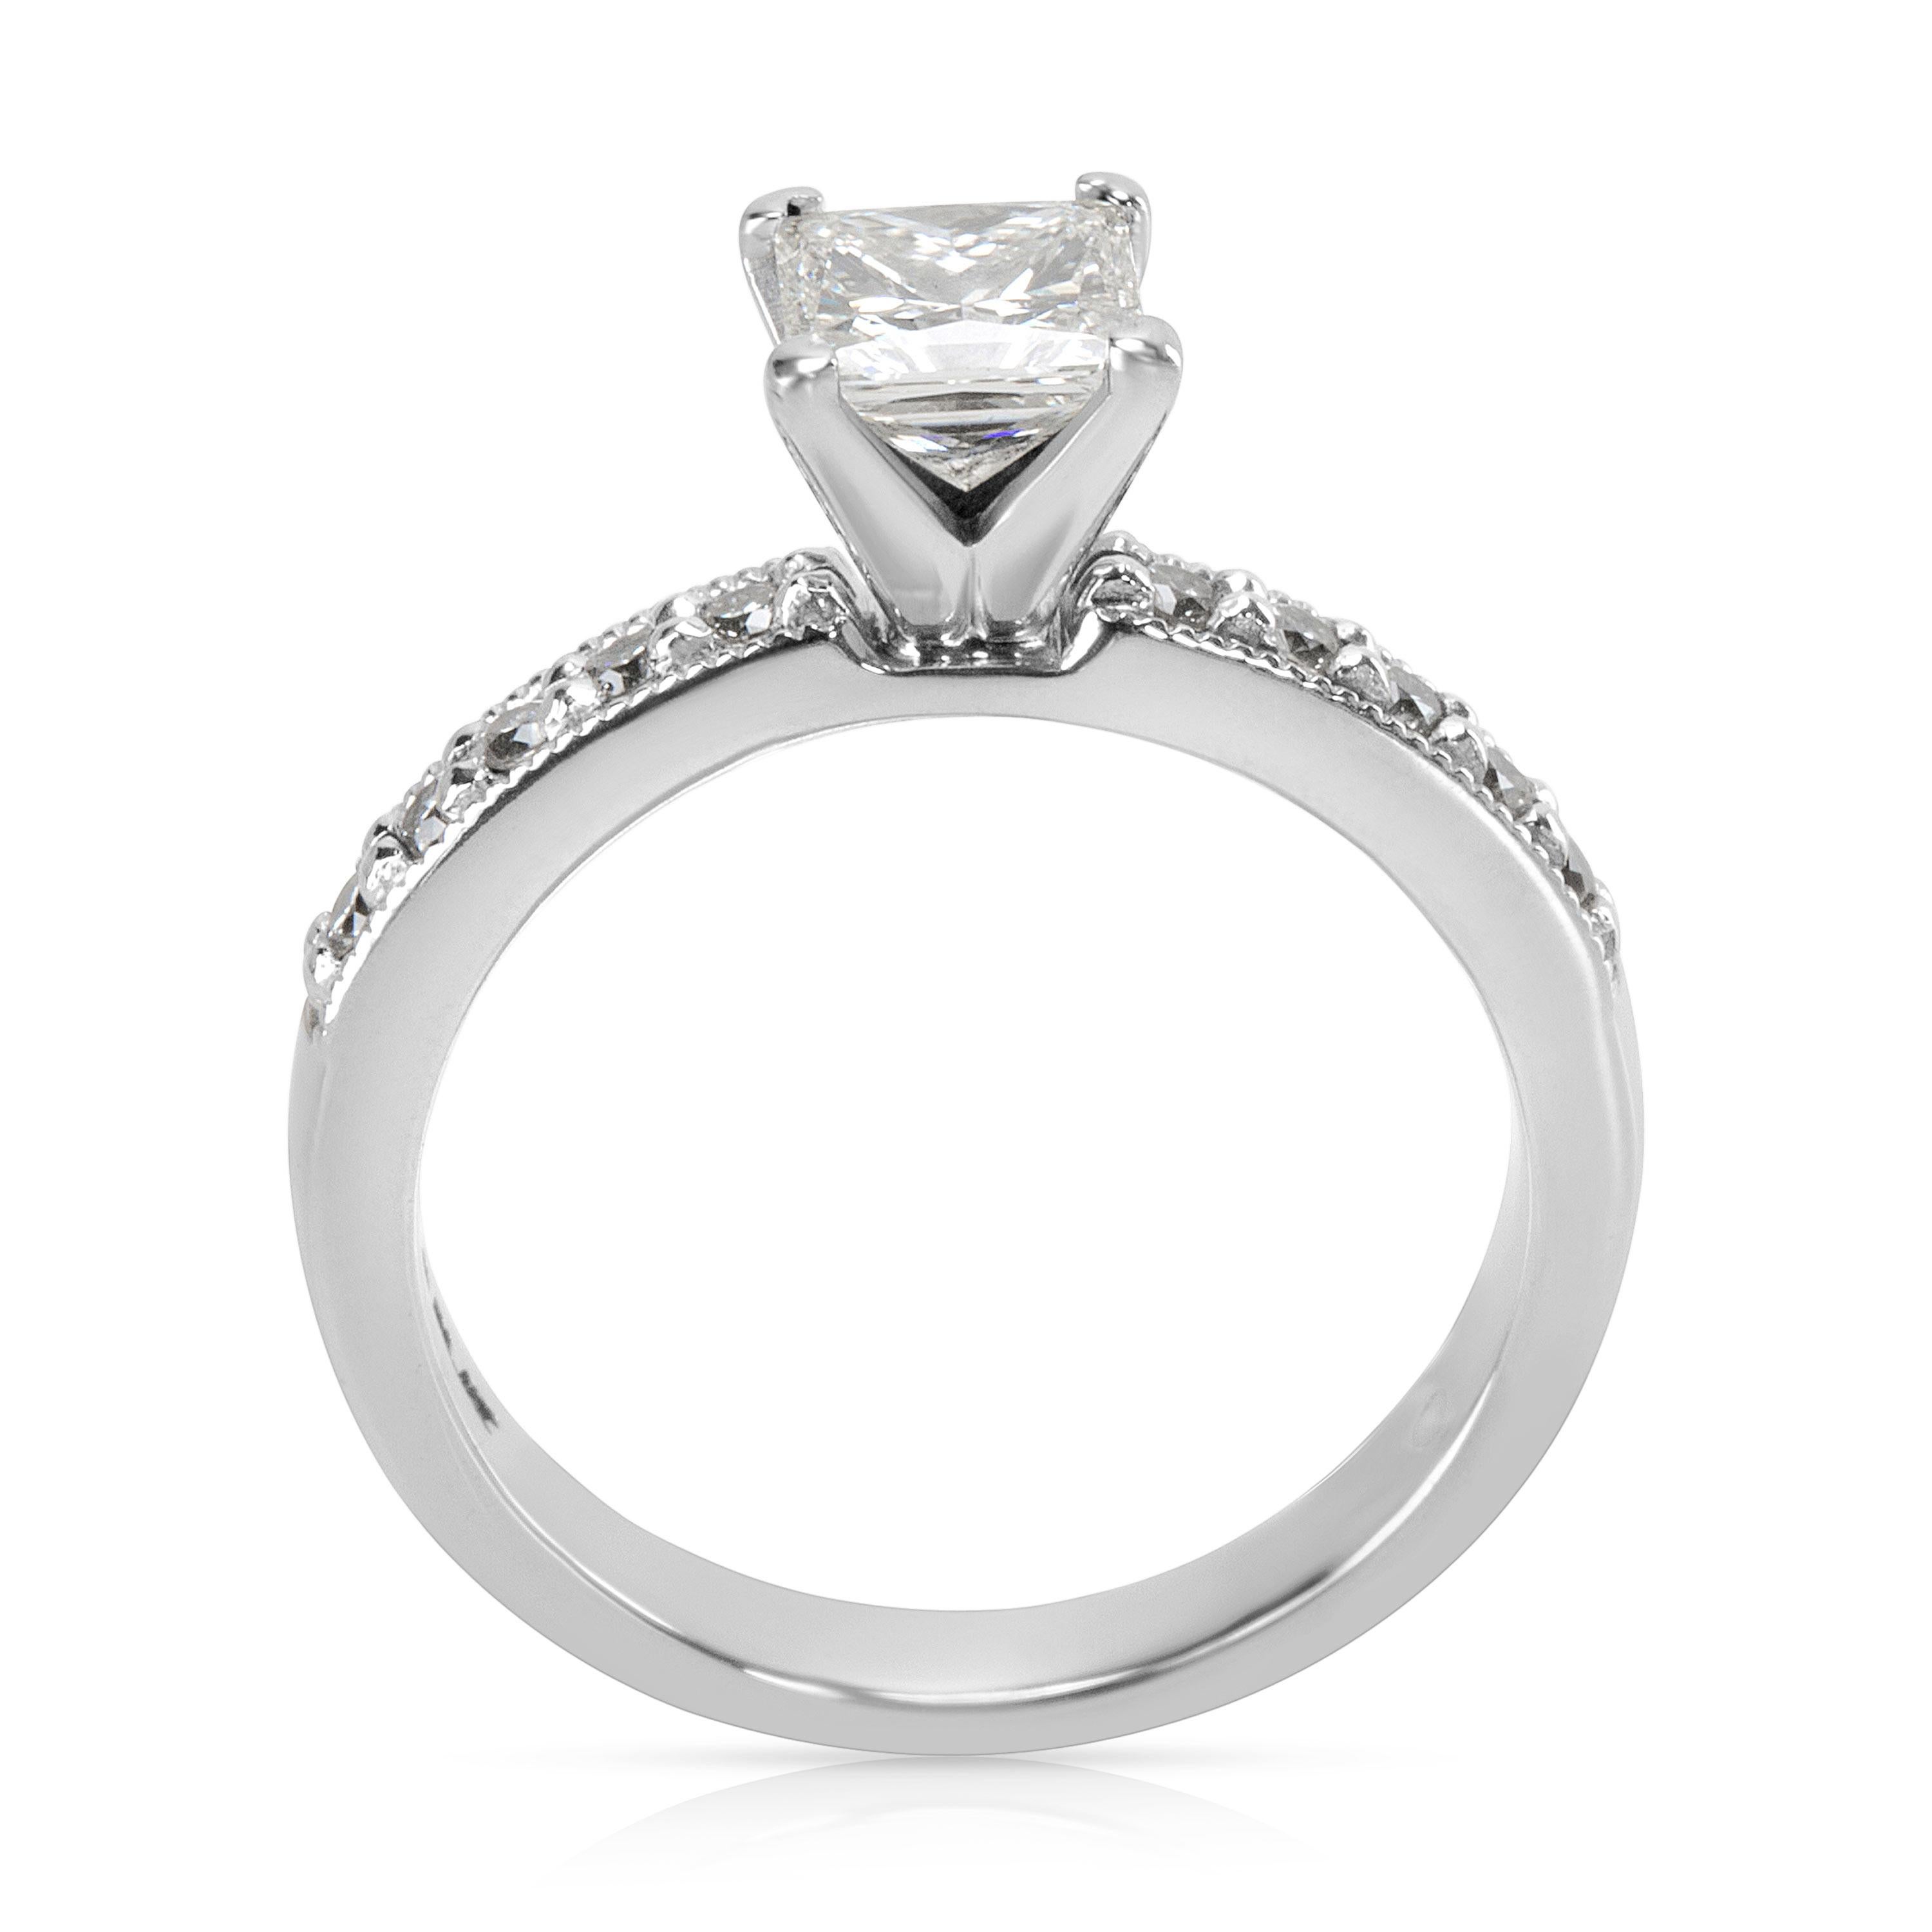 Women's GIA Certified Princess Diamond Engagement Ring in Platinum 1.12 Carat Ring